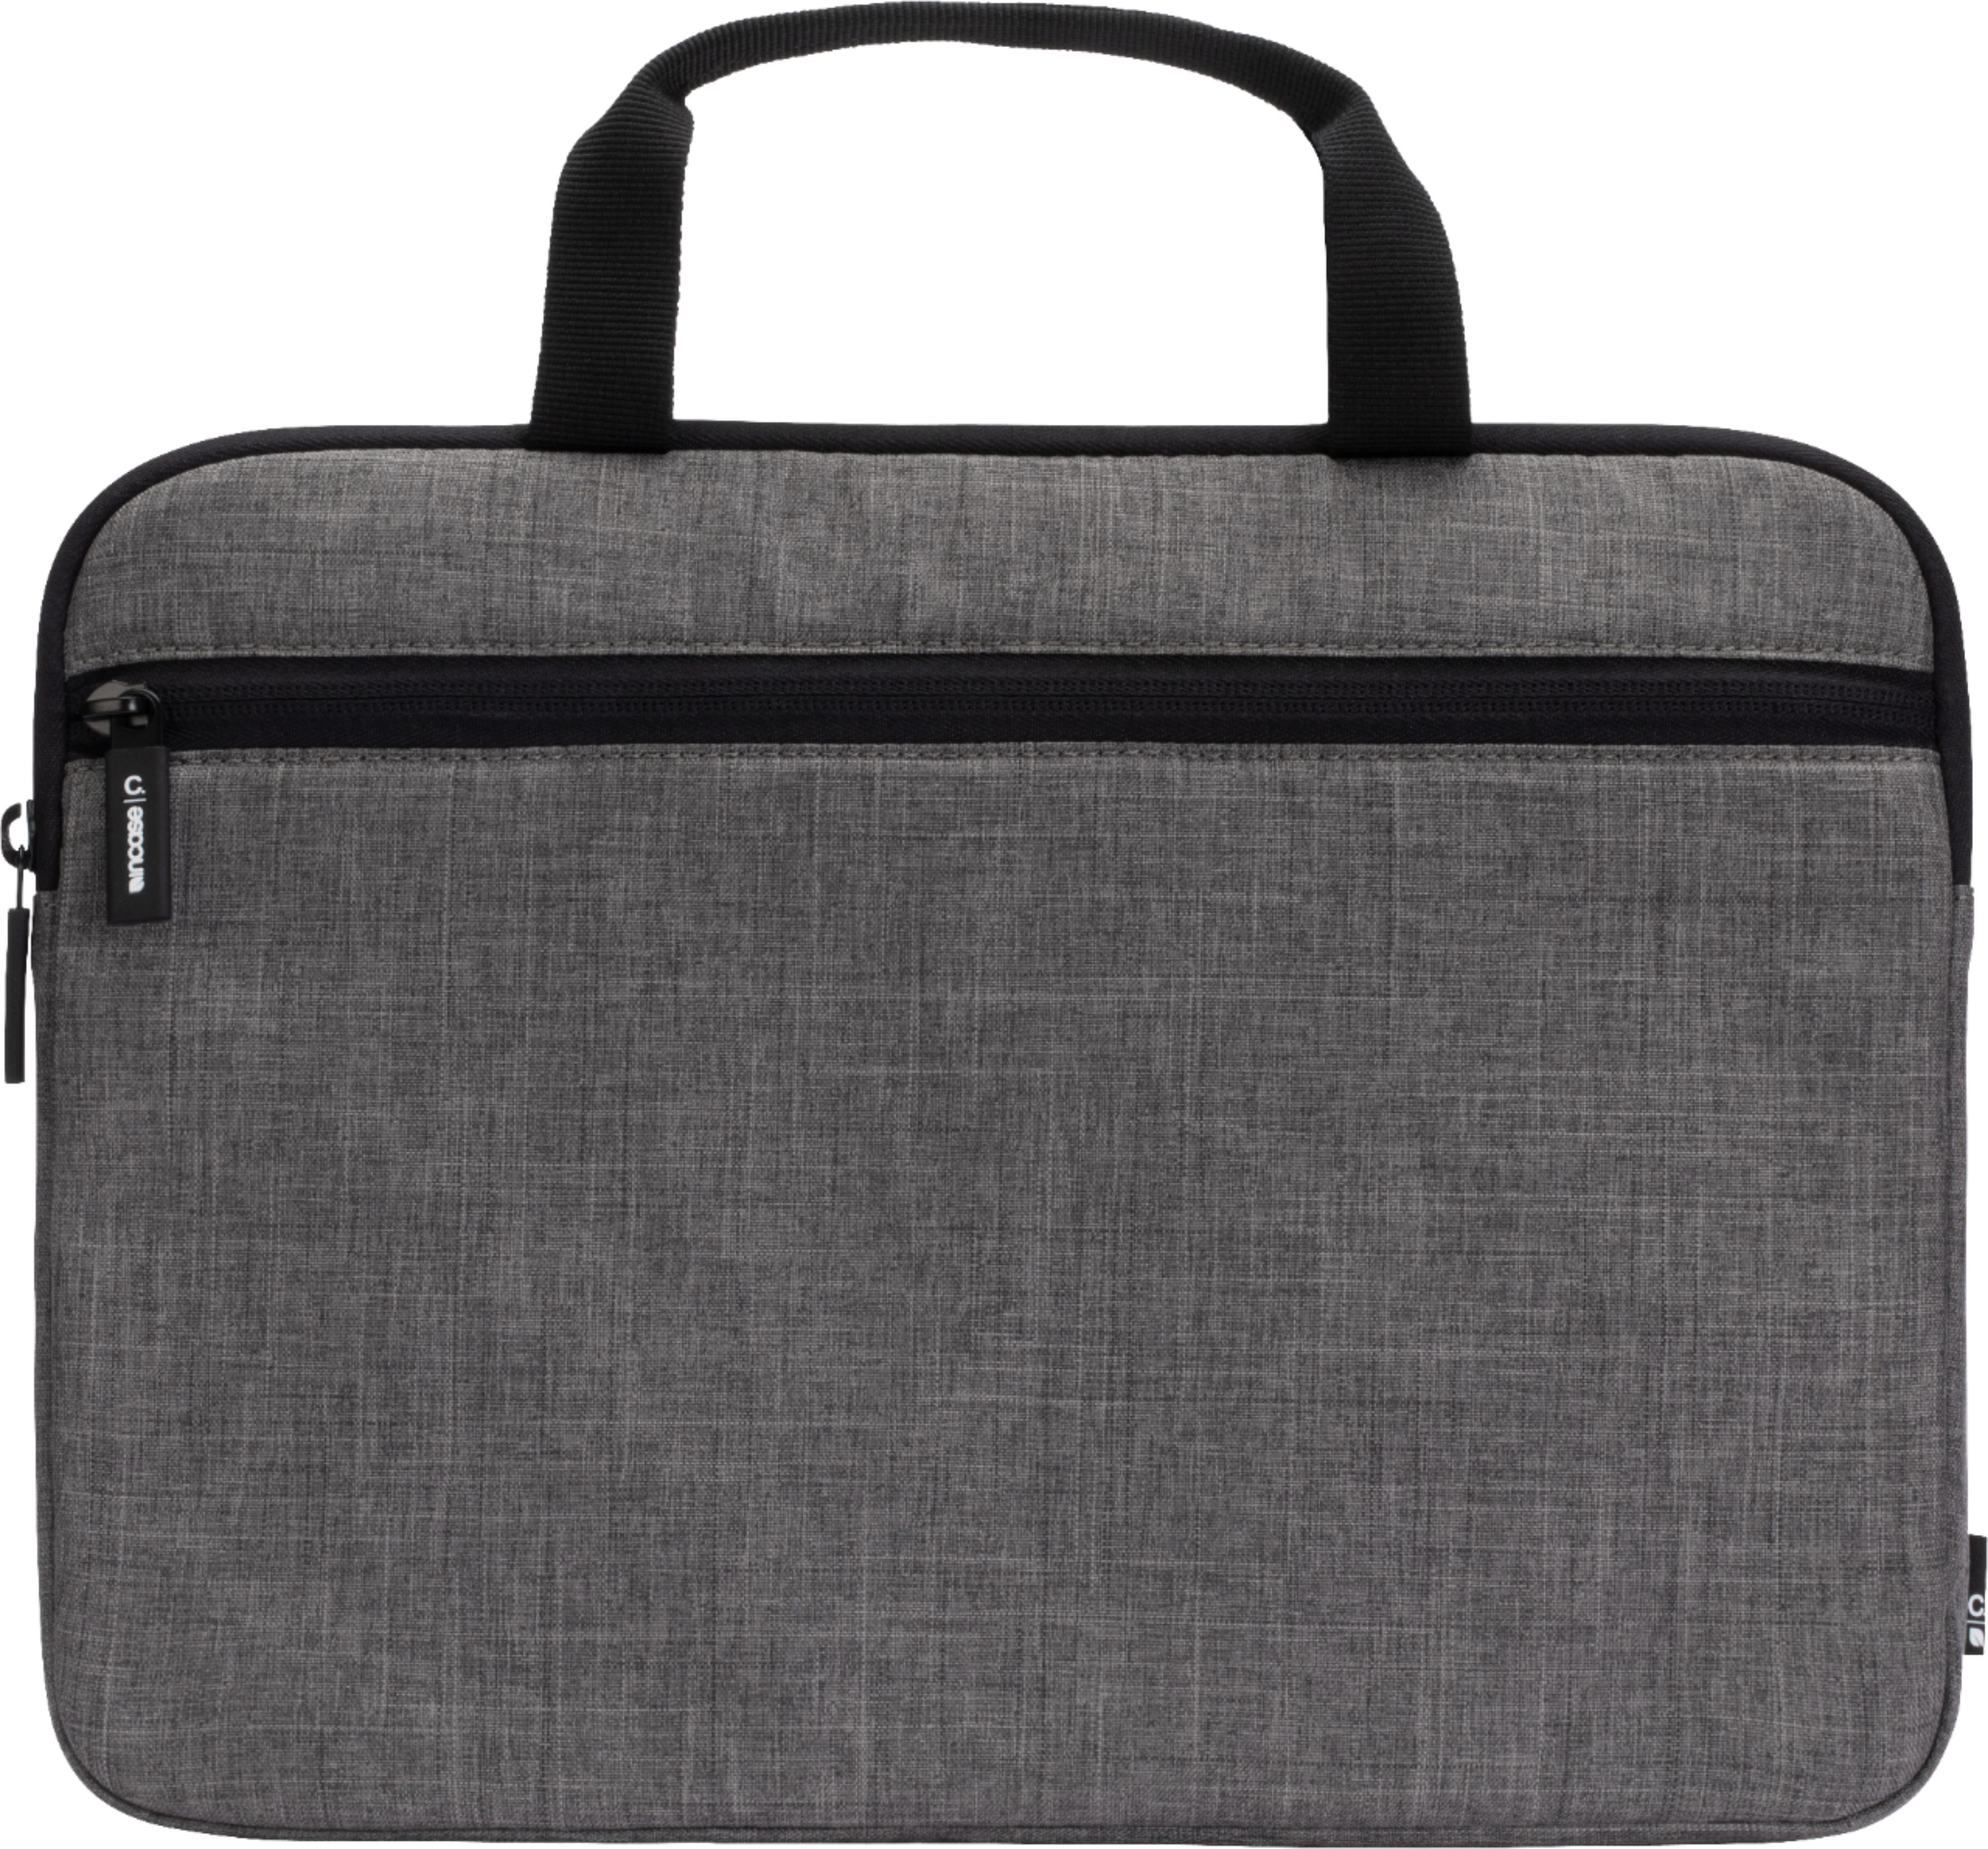 Briefcase Messenger Shoulder Bag for Men Women 13 Inch Laptop Case Beetlejuice Laptop Bag 